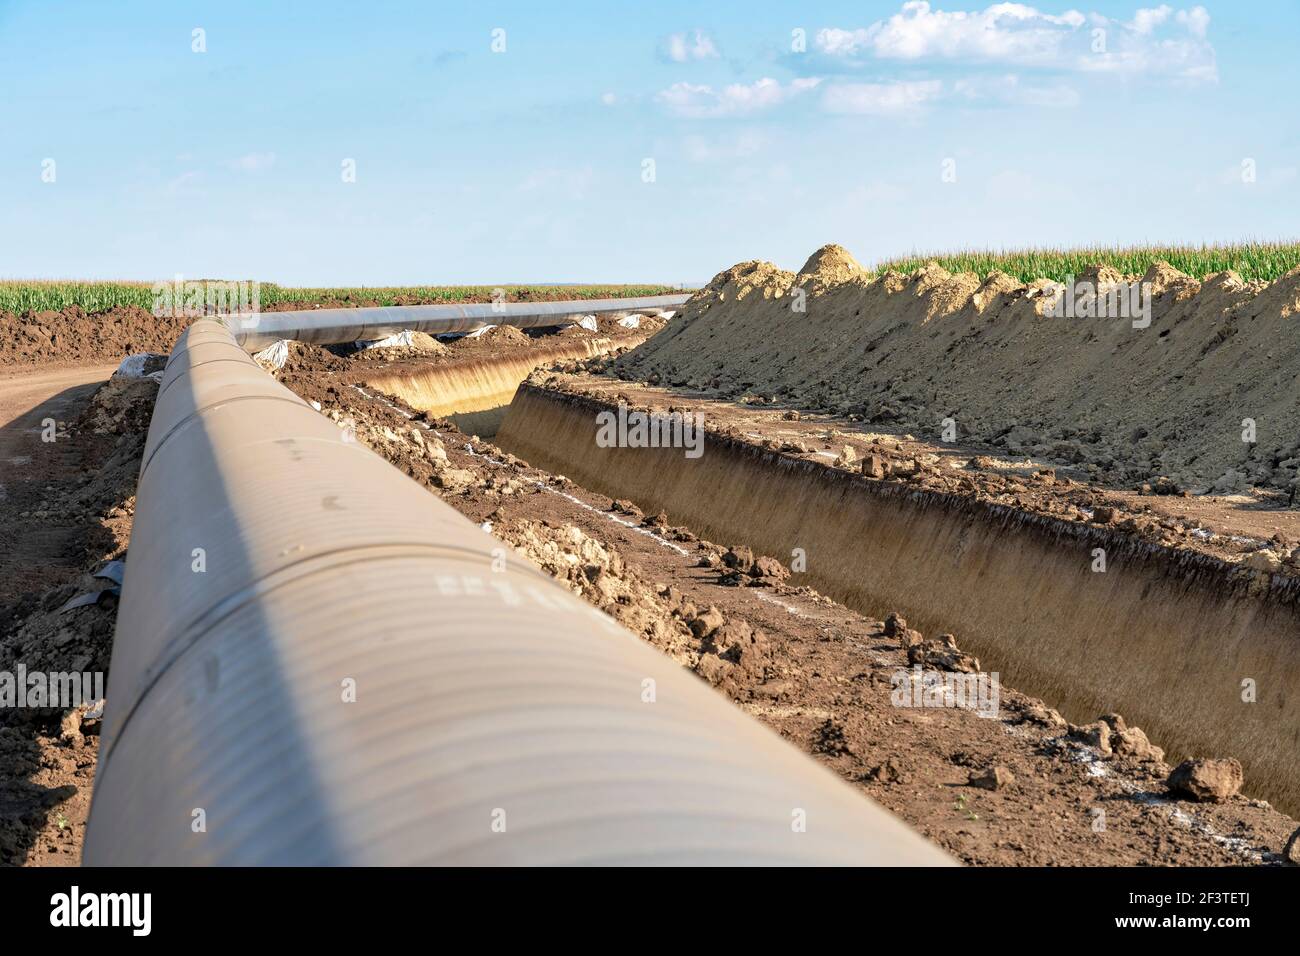 Installation und Konstruktion der Gaspipeline. Rohre werden auf stützende Sandsäcke neben Graben gelegt und miteinander verschweißt. Türkische Stream-Pipeline. Stockfoto